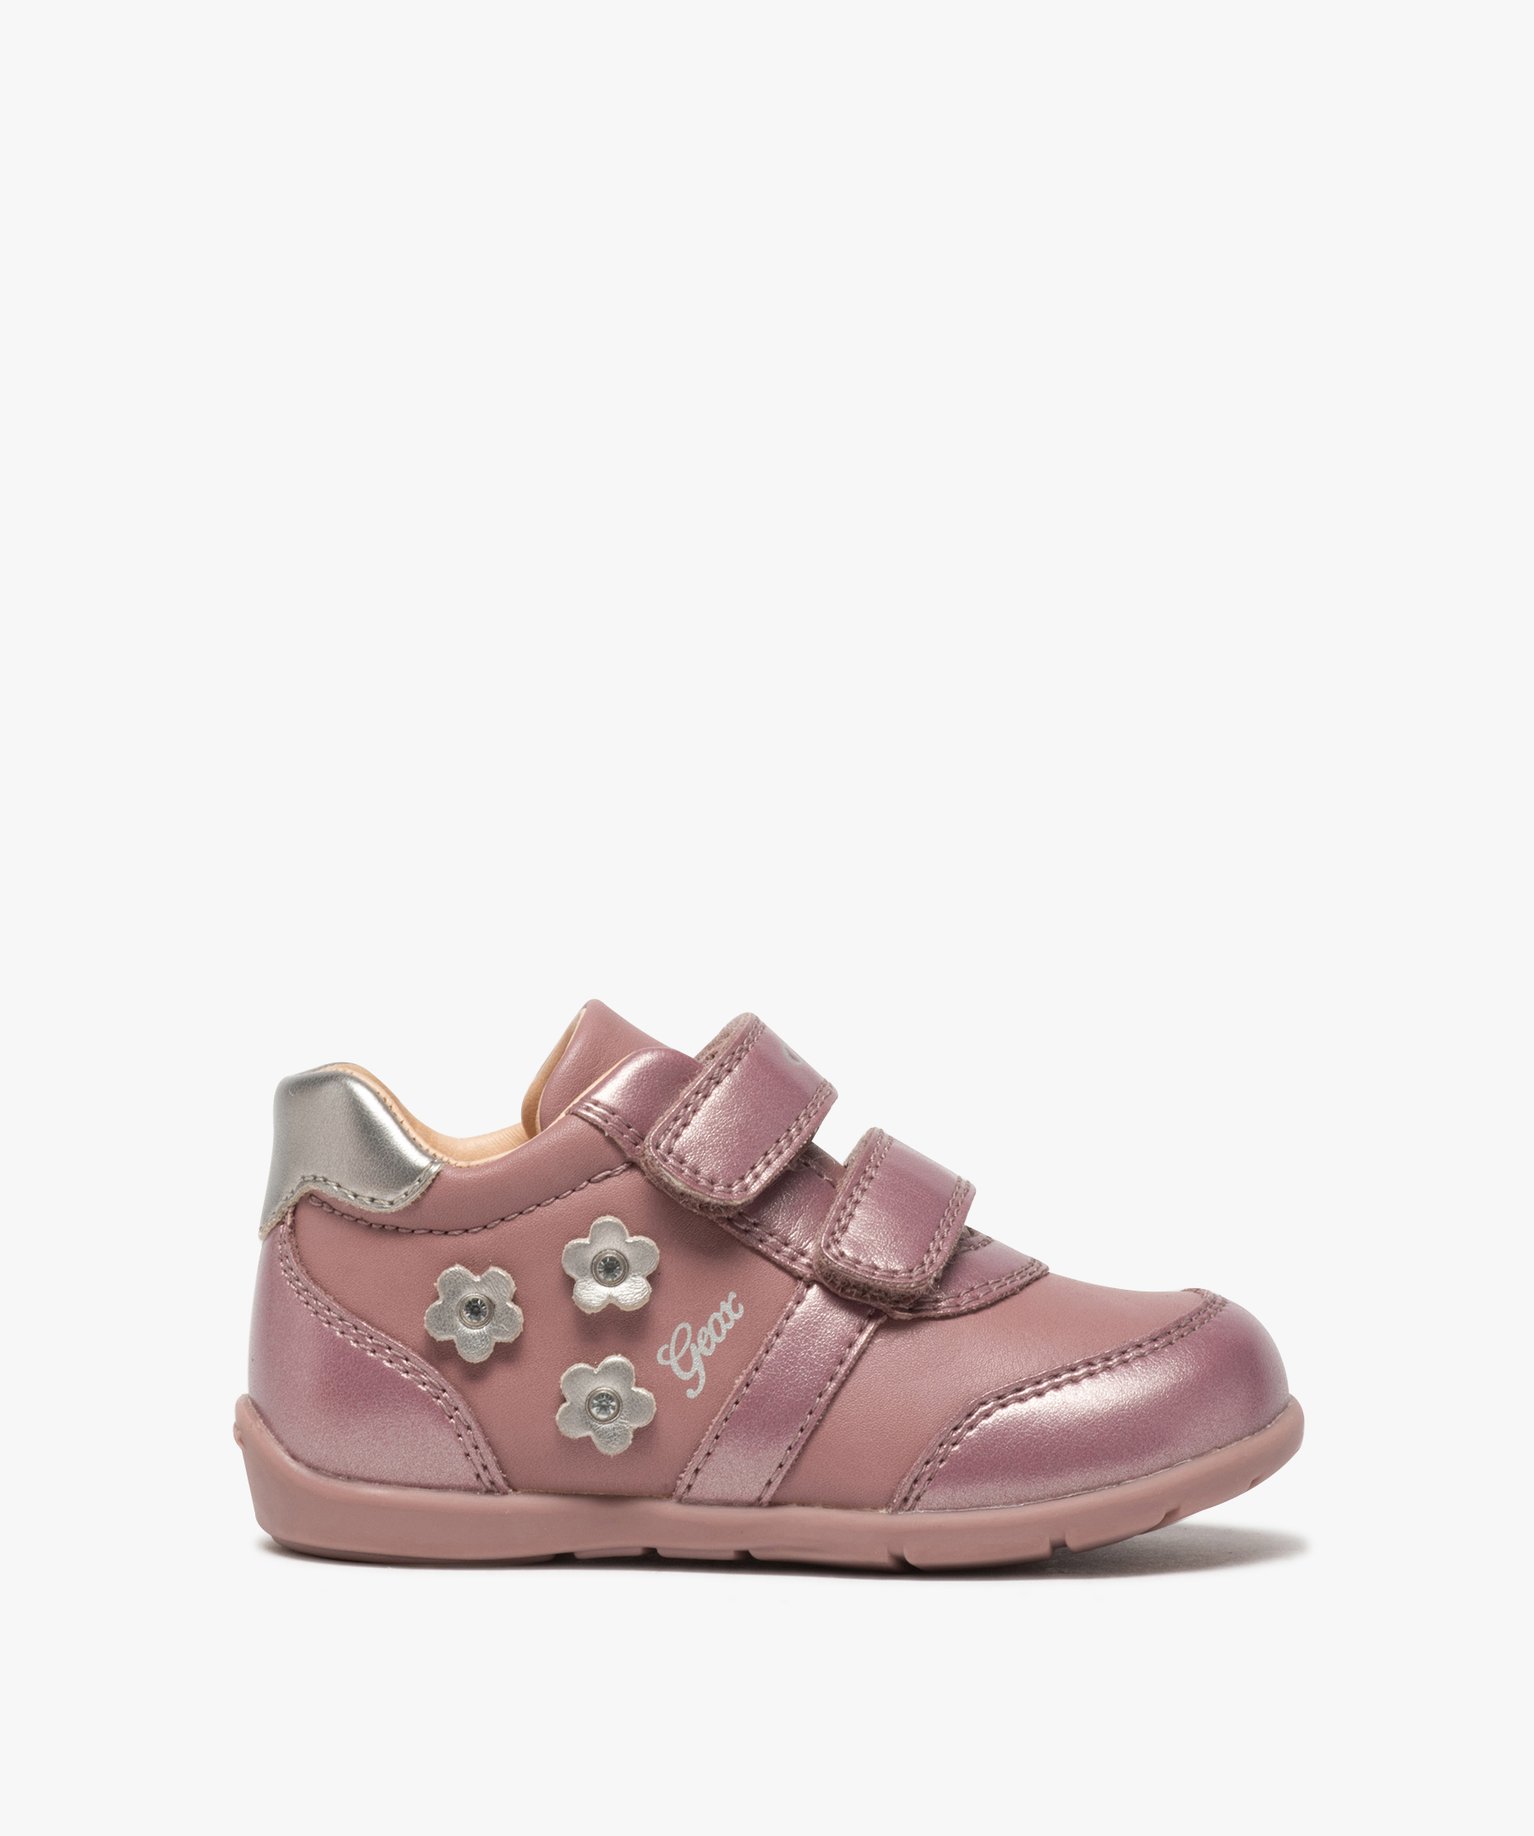 chaussures bebe fille a scratch decor fleurs - geox rose chaussures de parc  promos